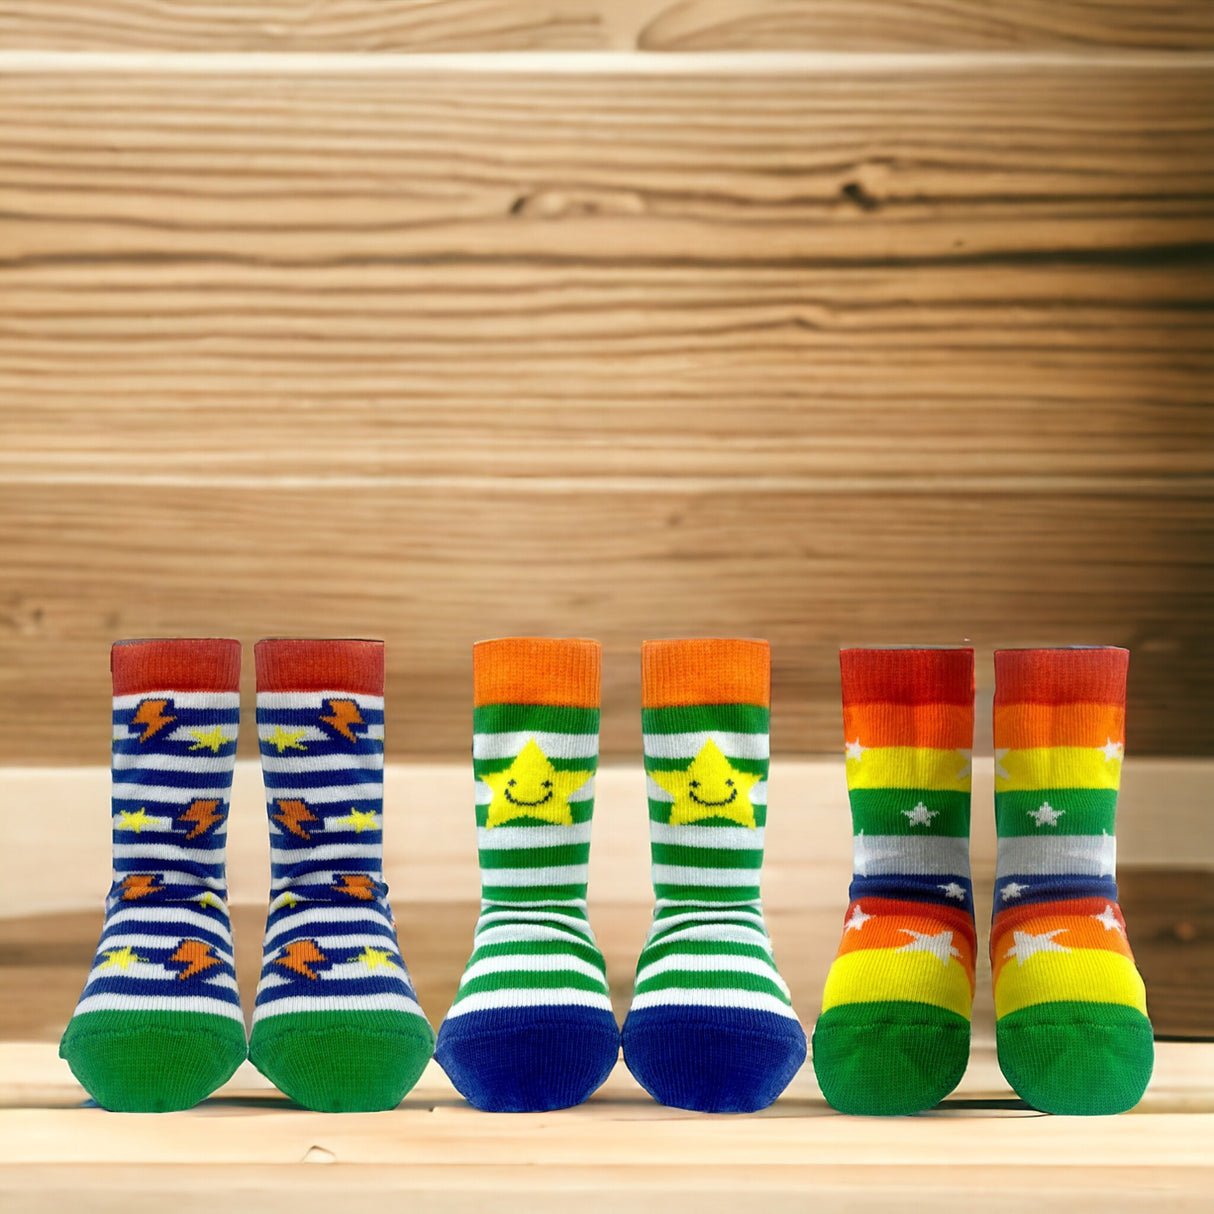 Bester Bruder Cucamelon Socken Kindersocken für 2-4-Jährige mit Geschenkverpackung (5 Paare)